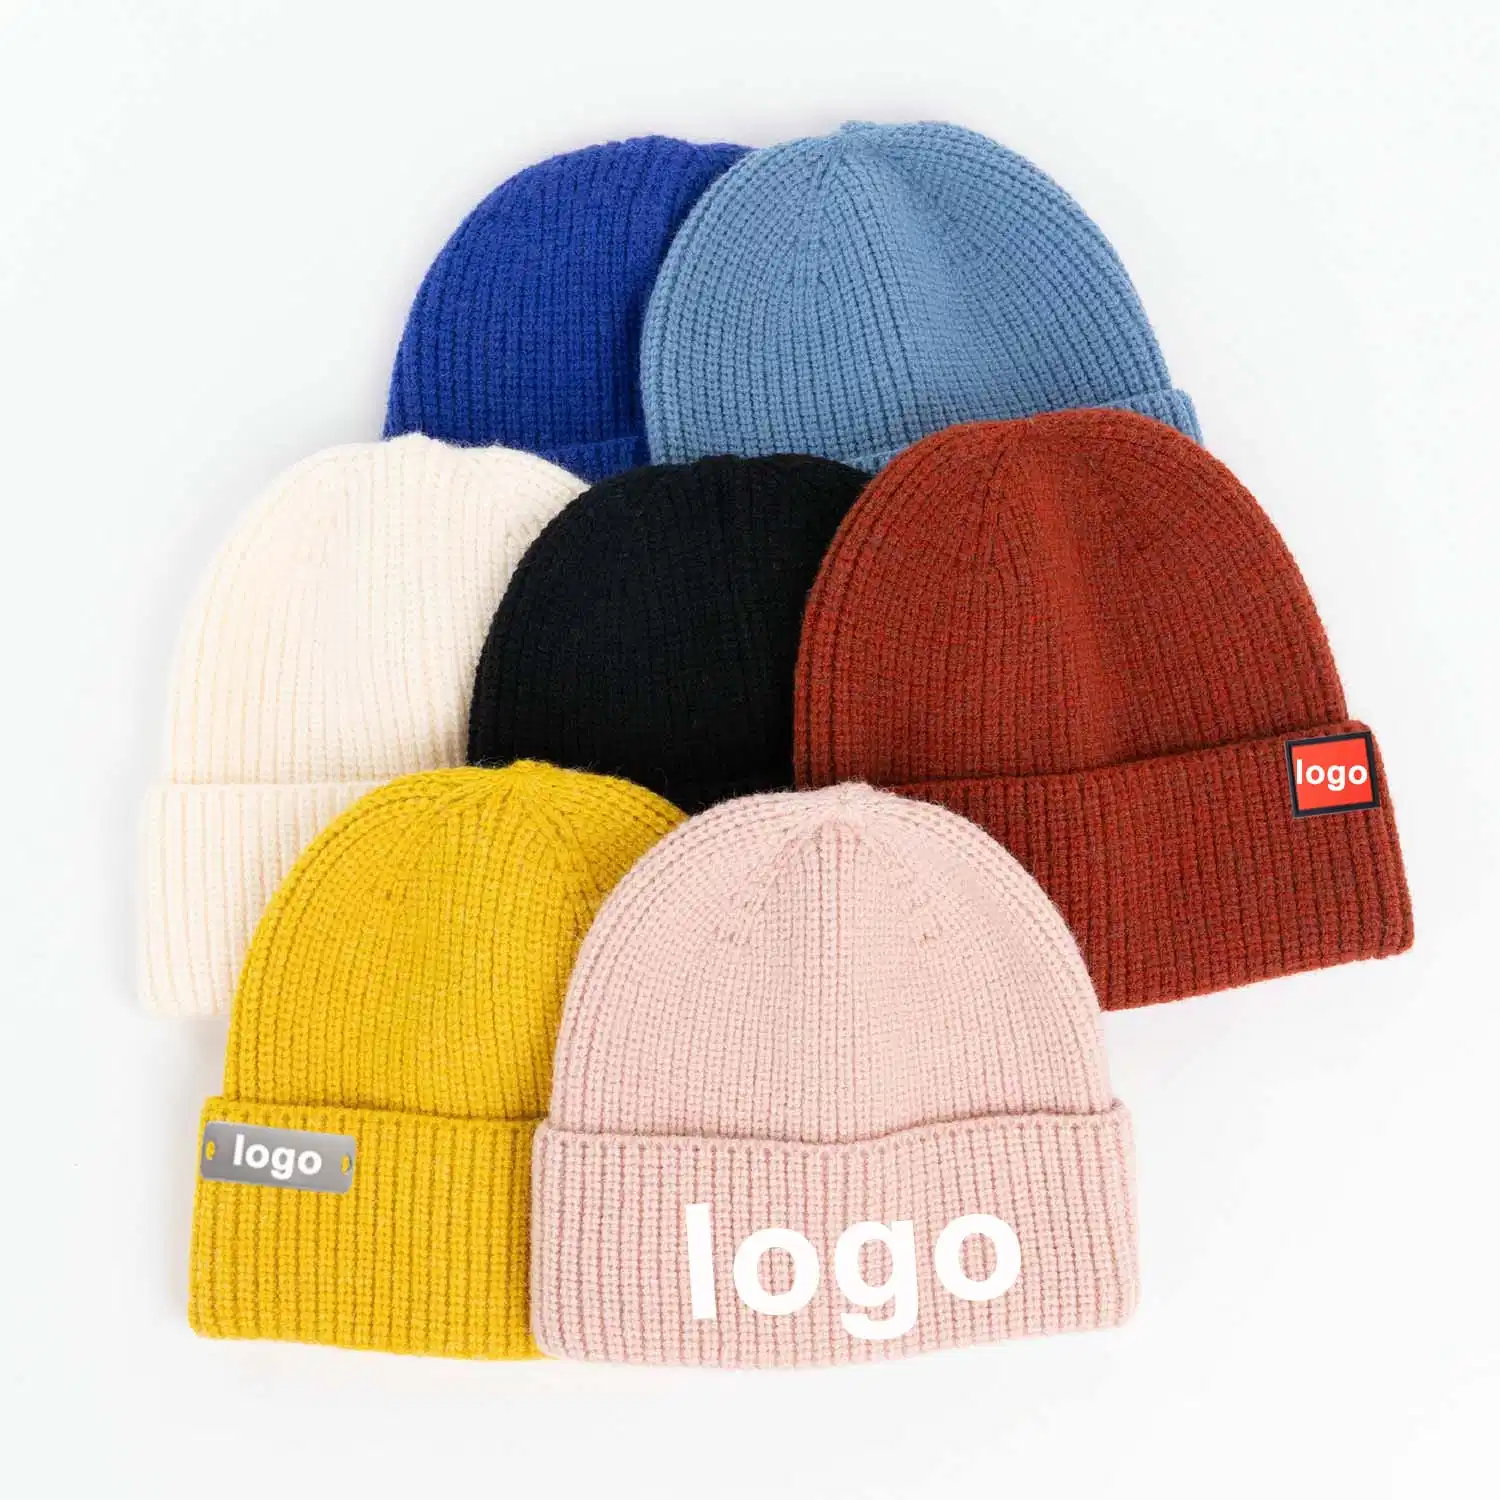 La calidad de diferentes colores Super Multi calurosamente Logotipo personalizado añadido de los pescadores de bolsillo Sobres en blanco Hat Capot Beanie